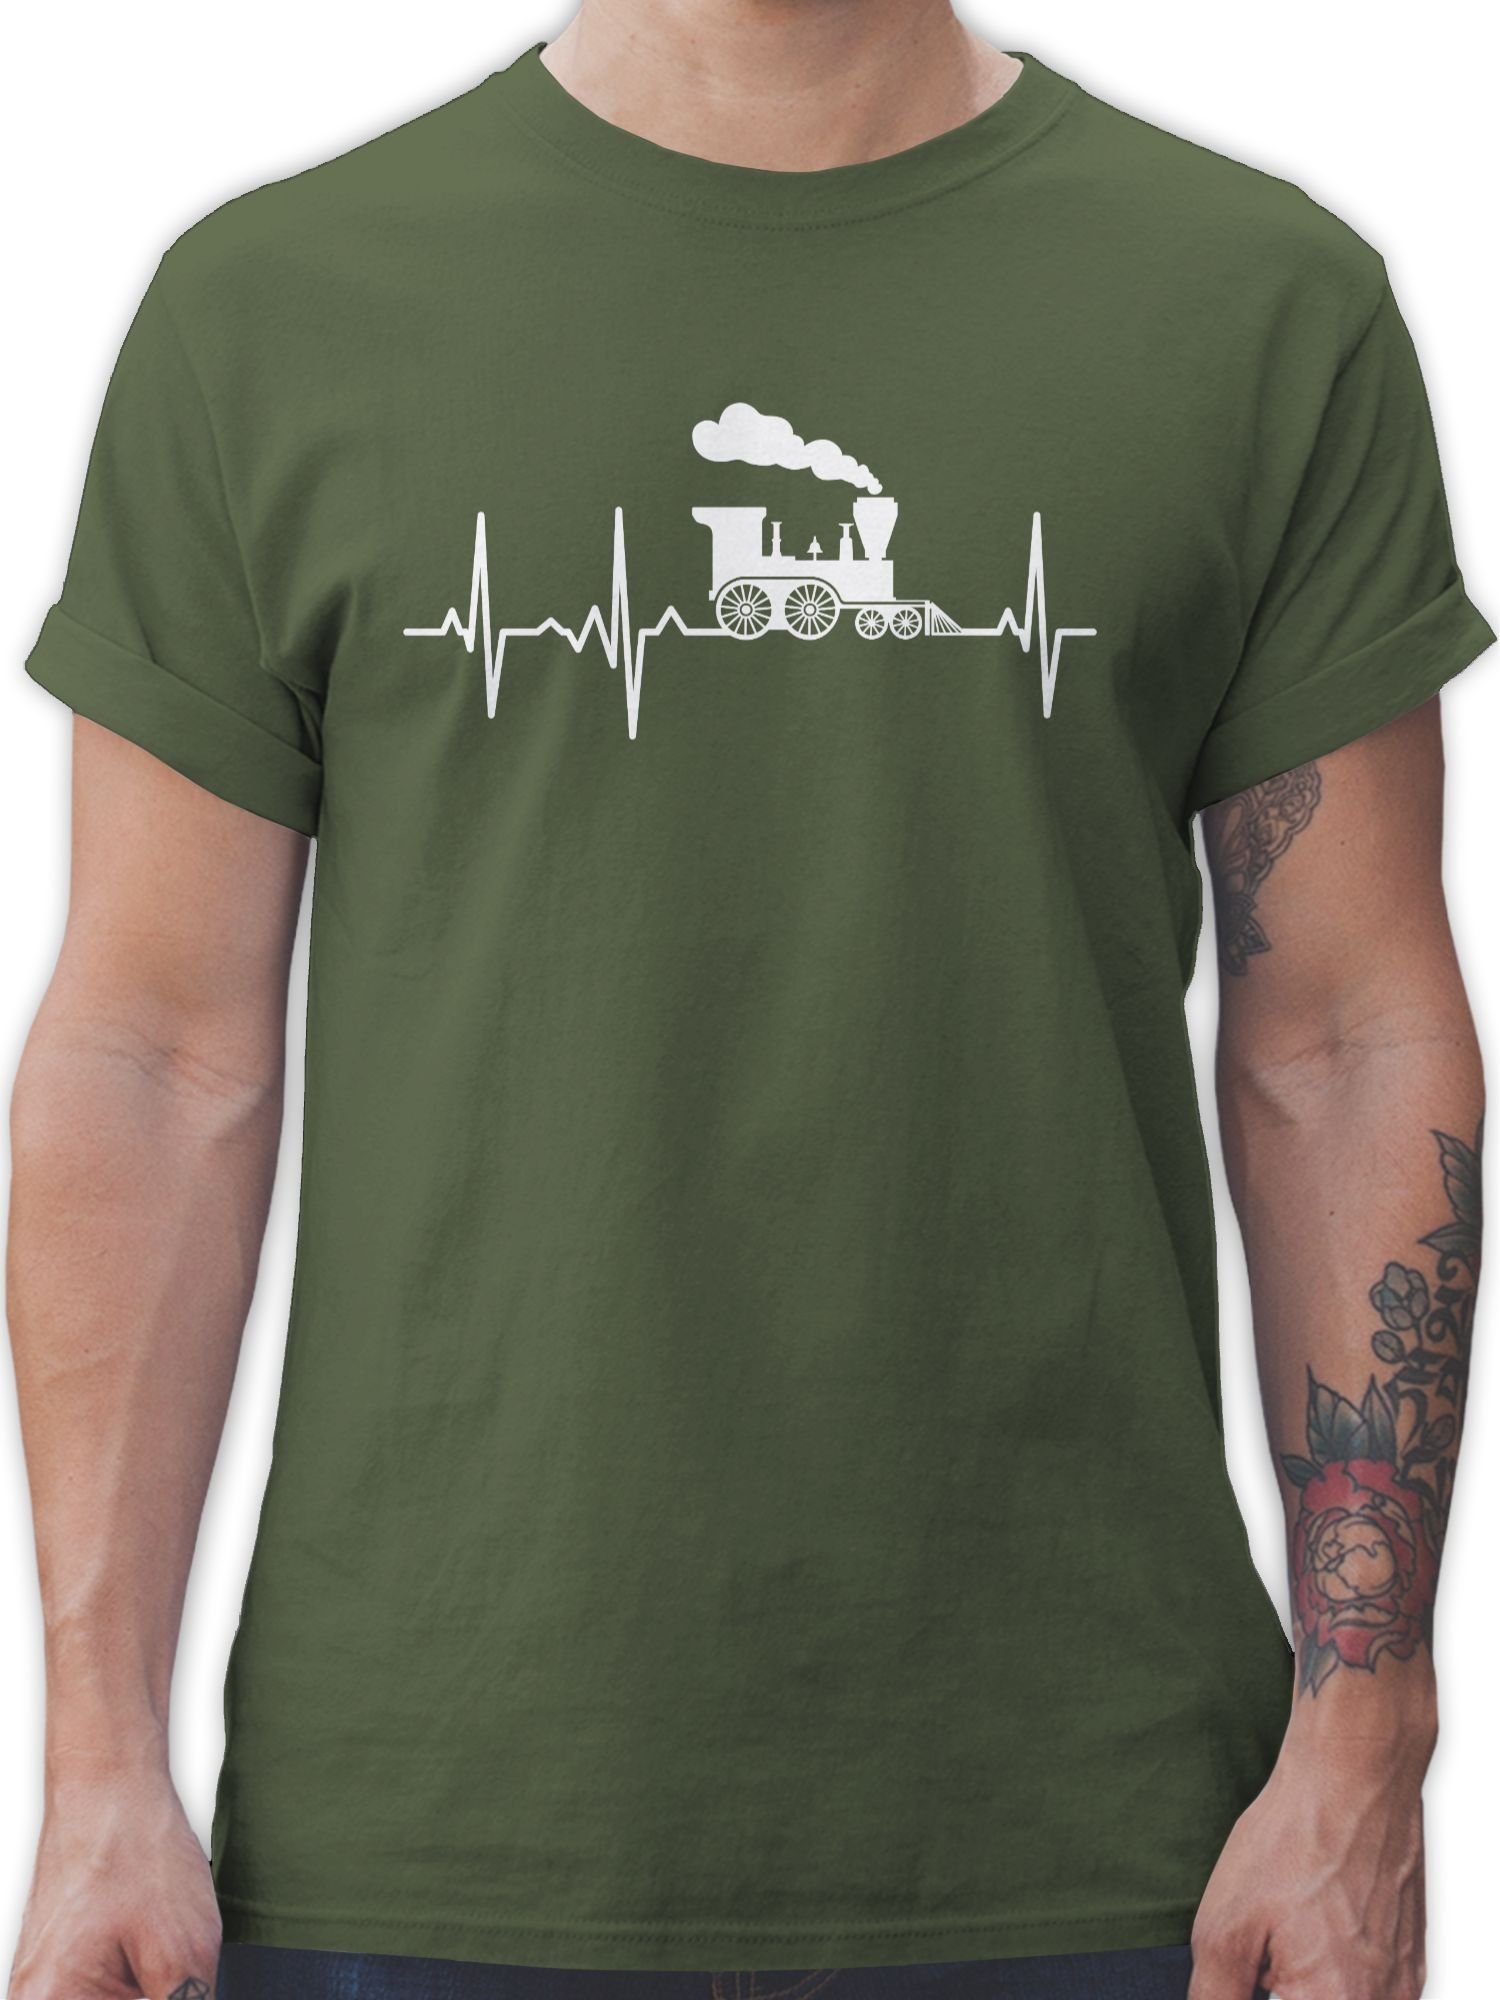 Dampflok Hobby Outfit Herzschlag Shirtracer Army weiß T-Shirt 02 Grün